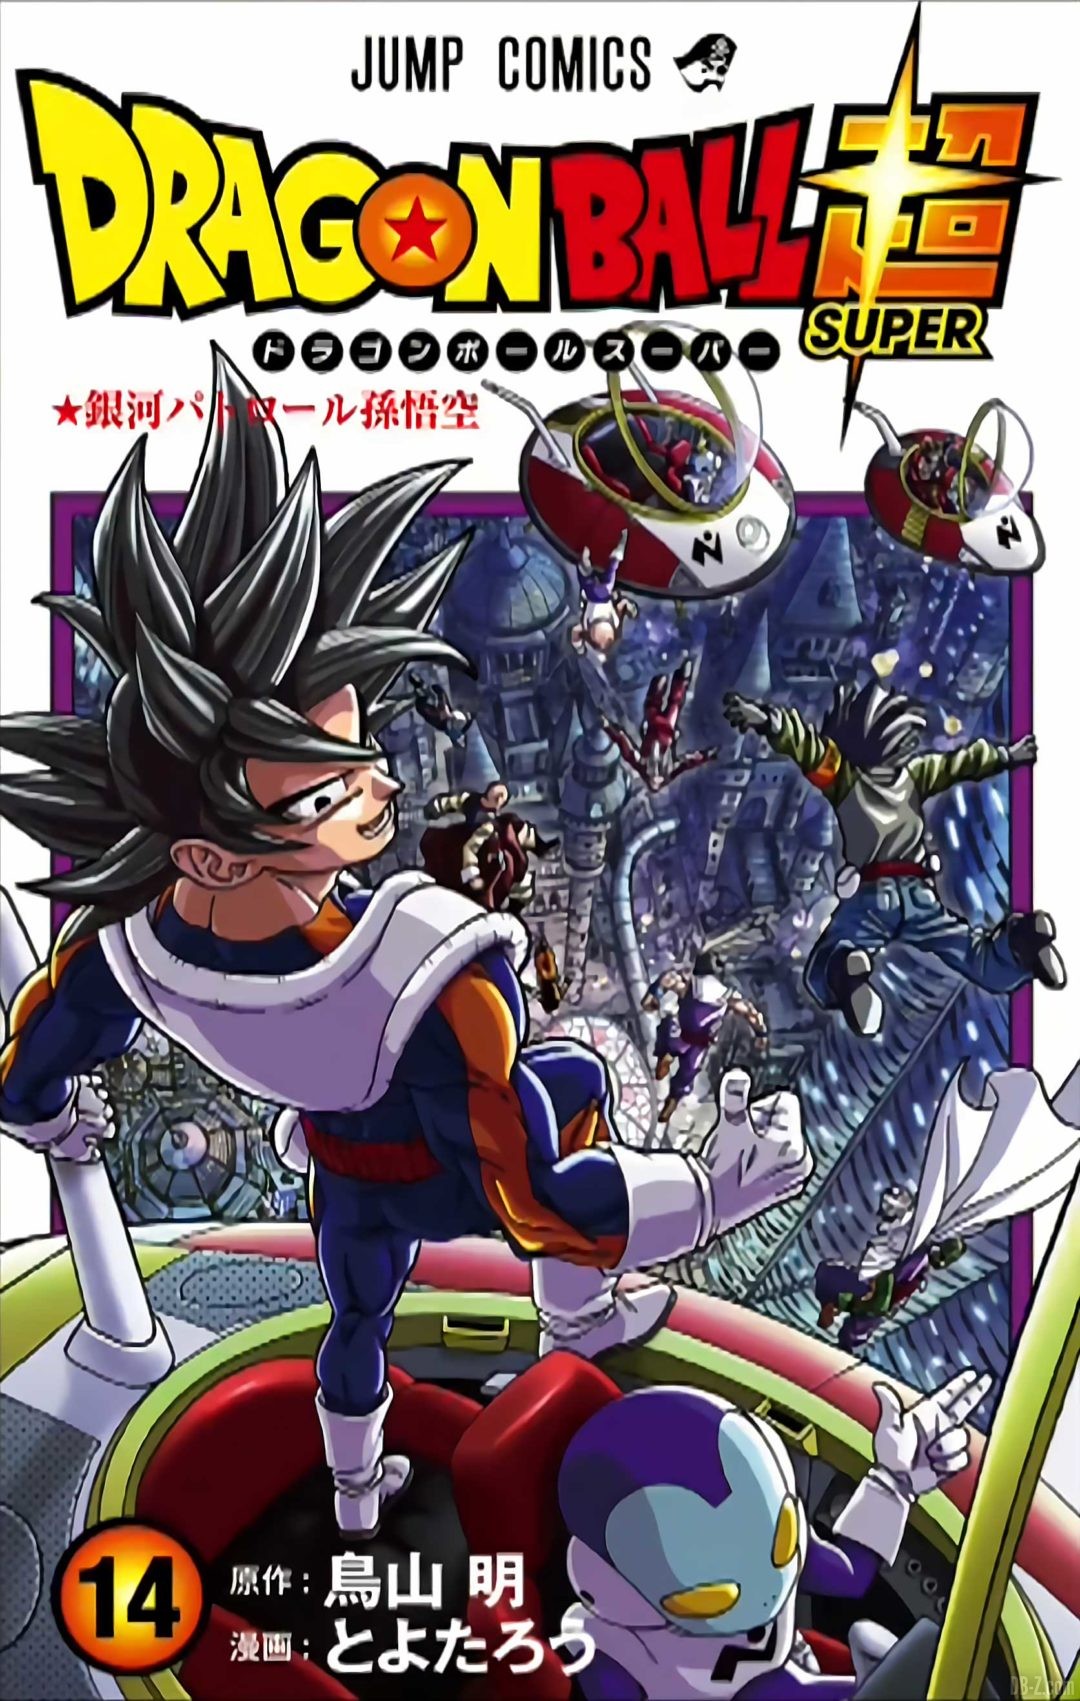 La cover du tome 14 de Dragon Ball Super se dévoile